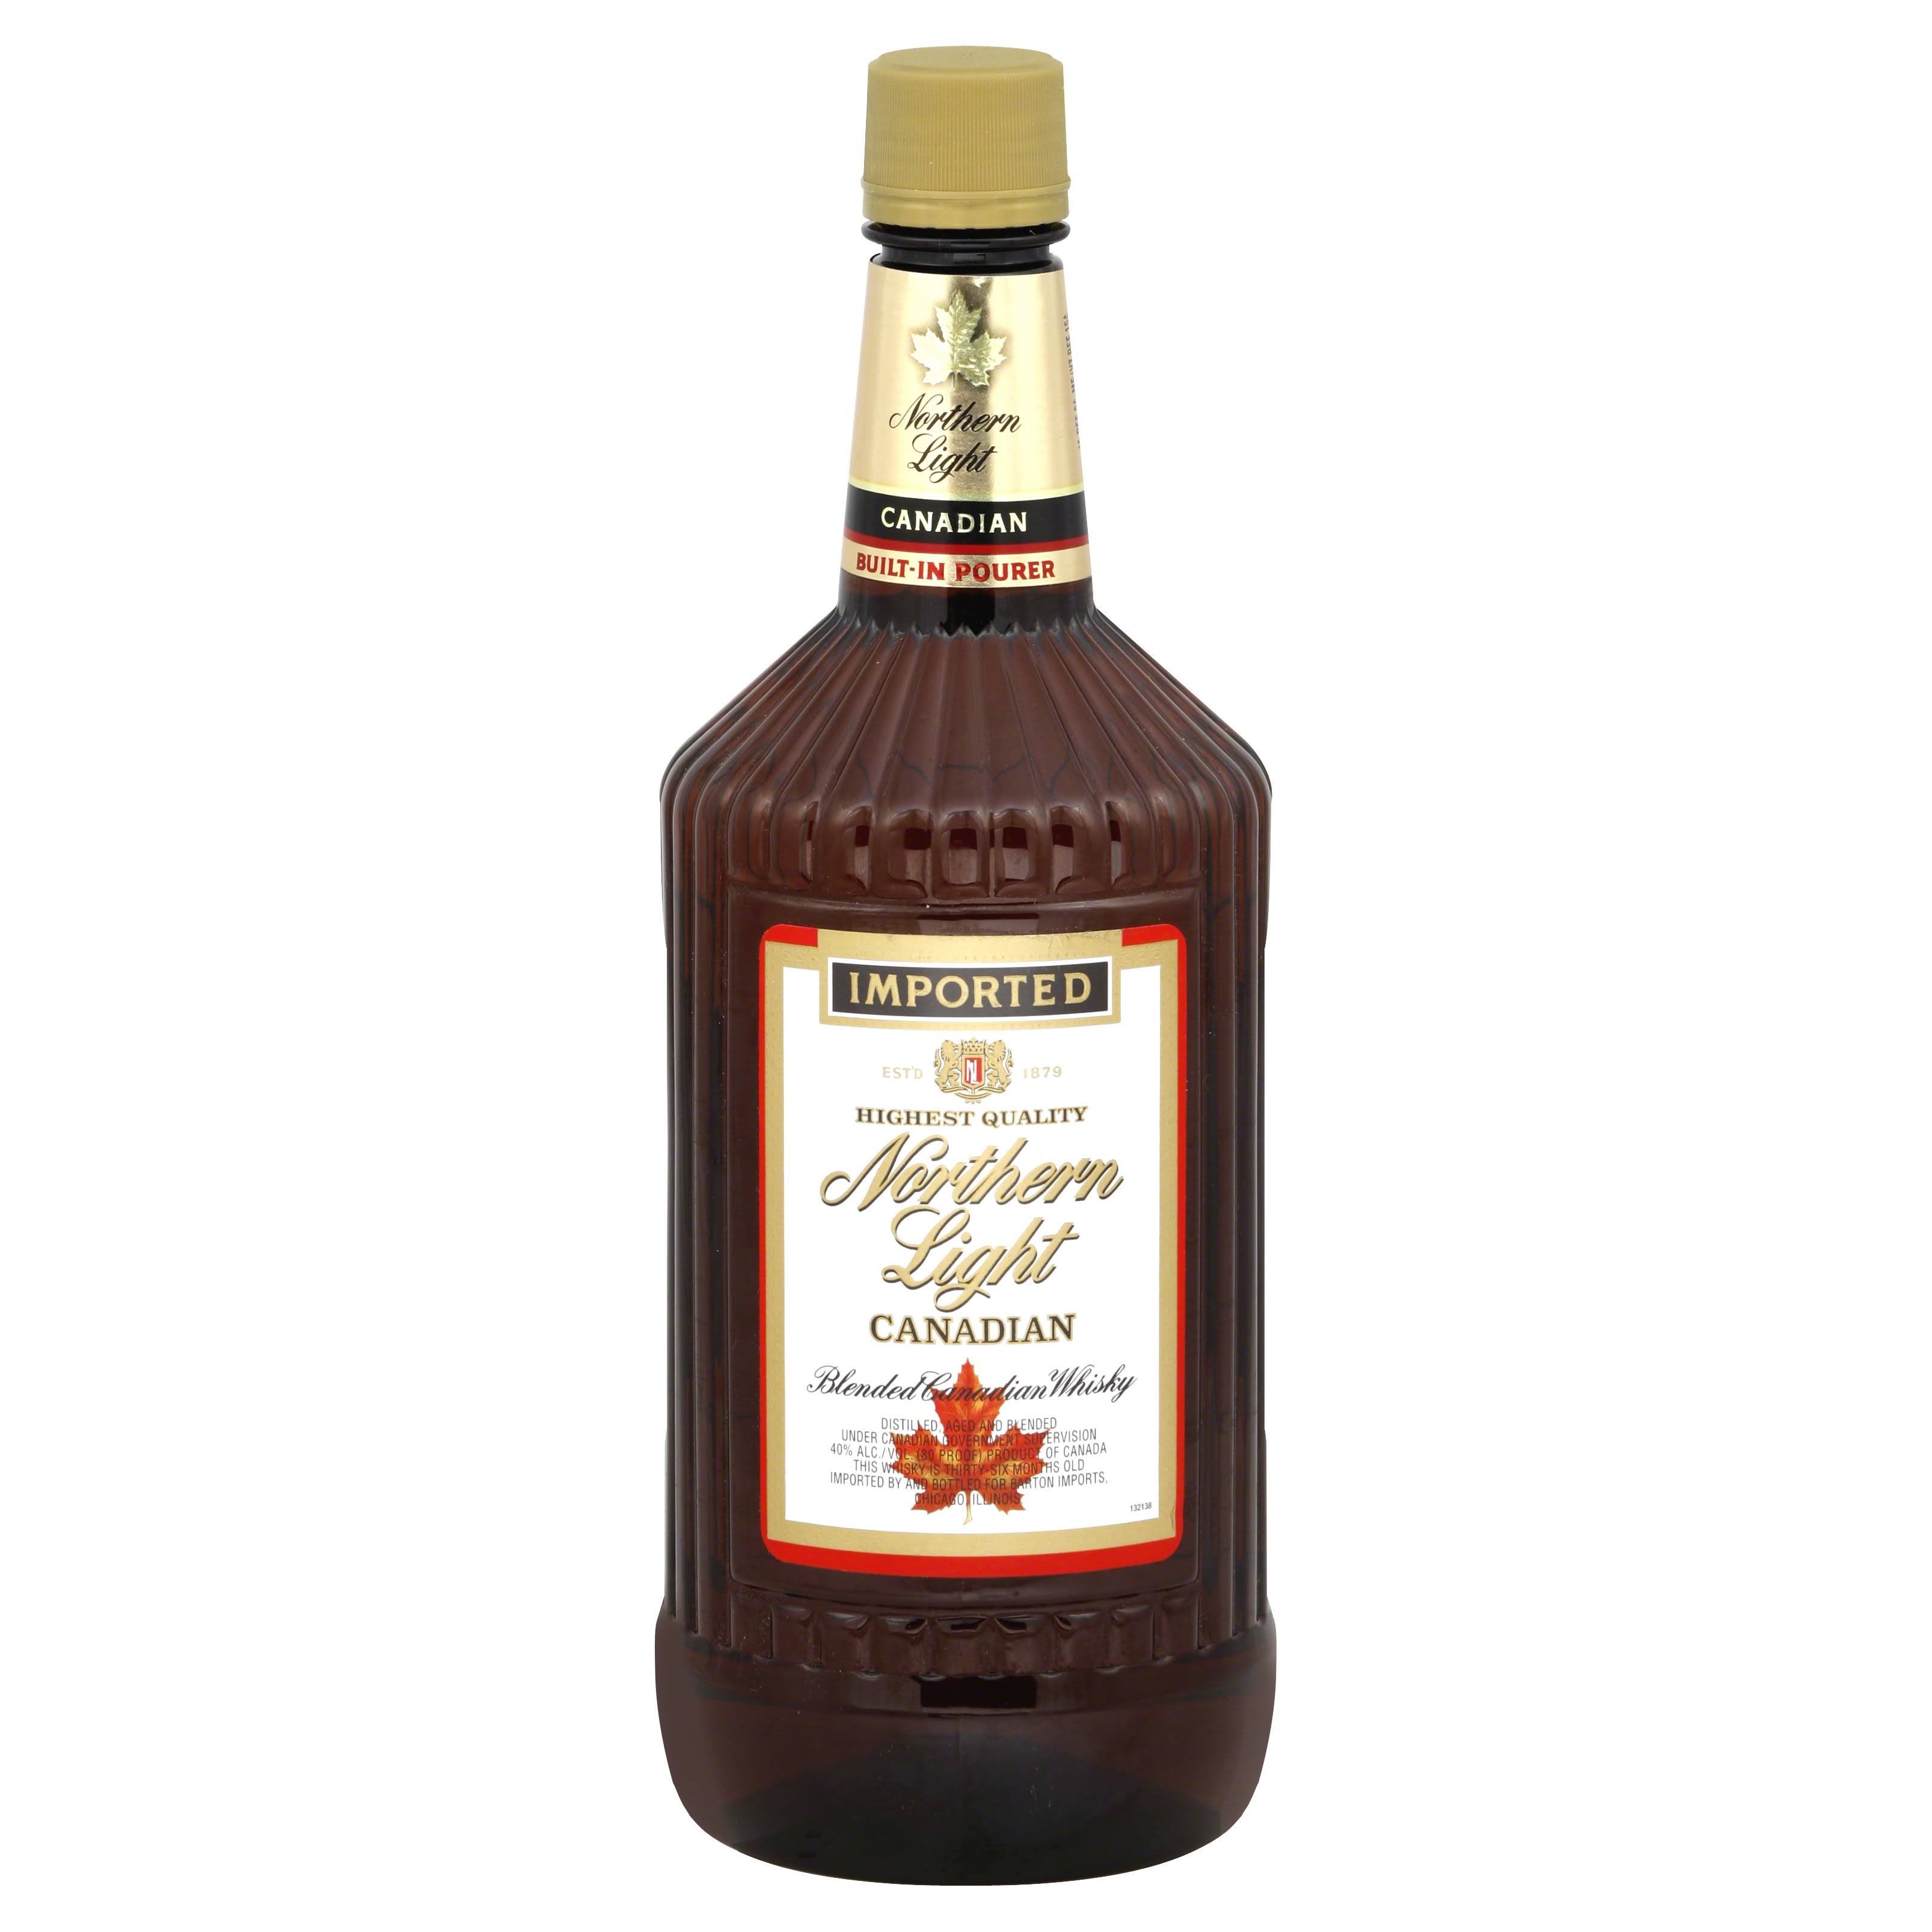 Northern Light Blended Canadian Whisky - 1.75 lt